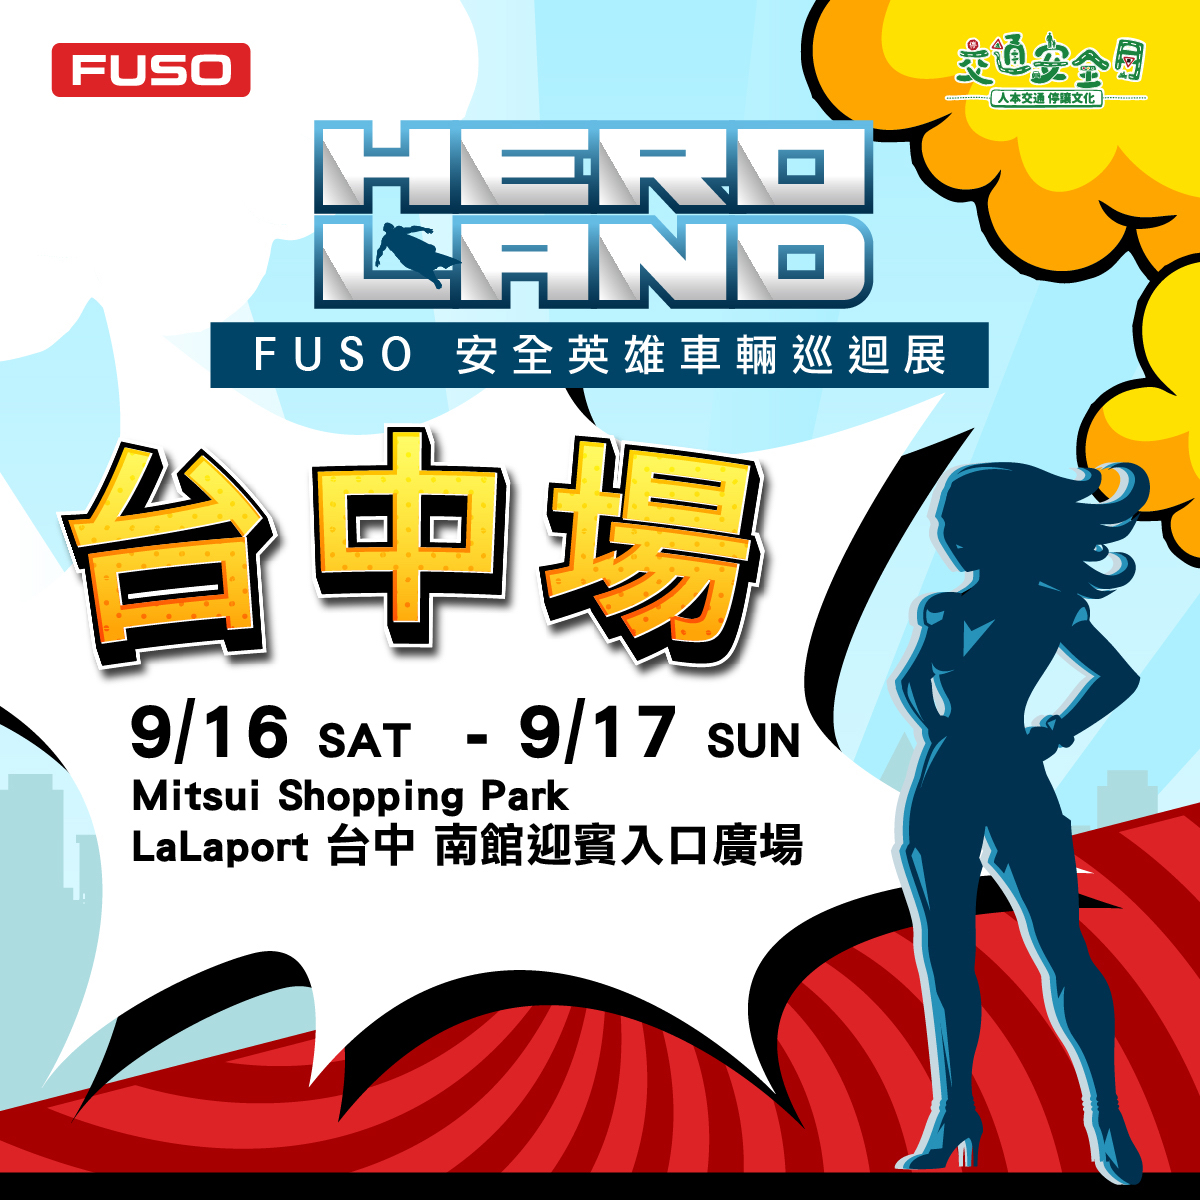 【圖5】『HERO LAND  FUSO安全英雄車輛巡迴展』於9月16日至17日在台中三井LaLaport舉辦.jpg